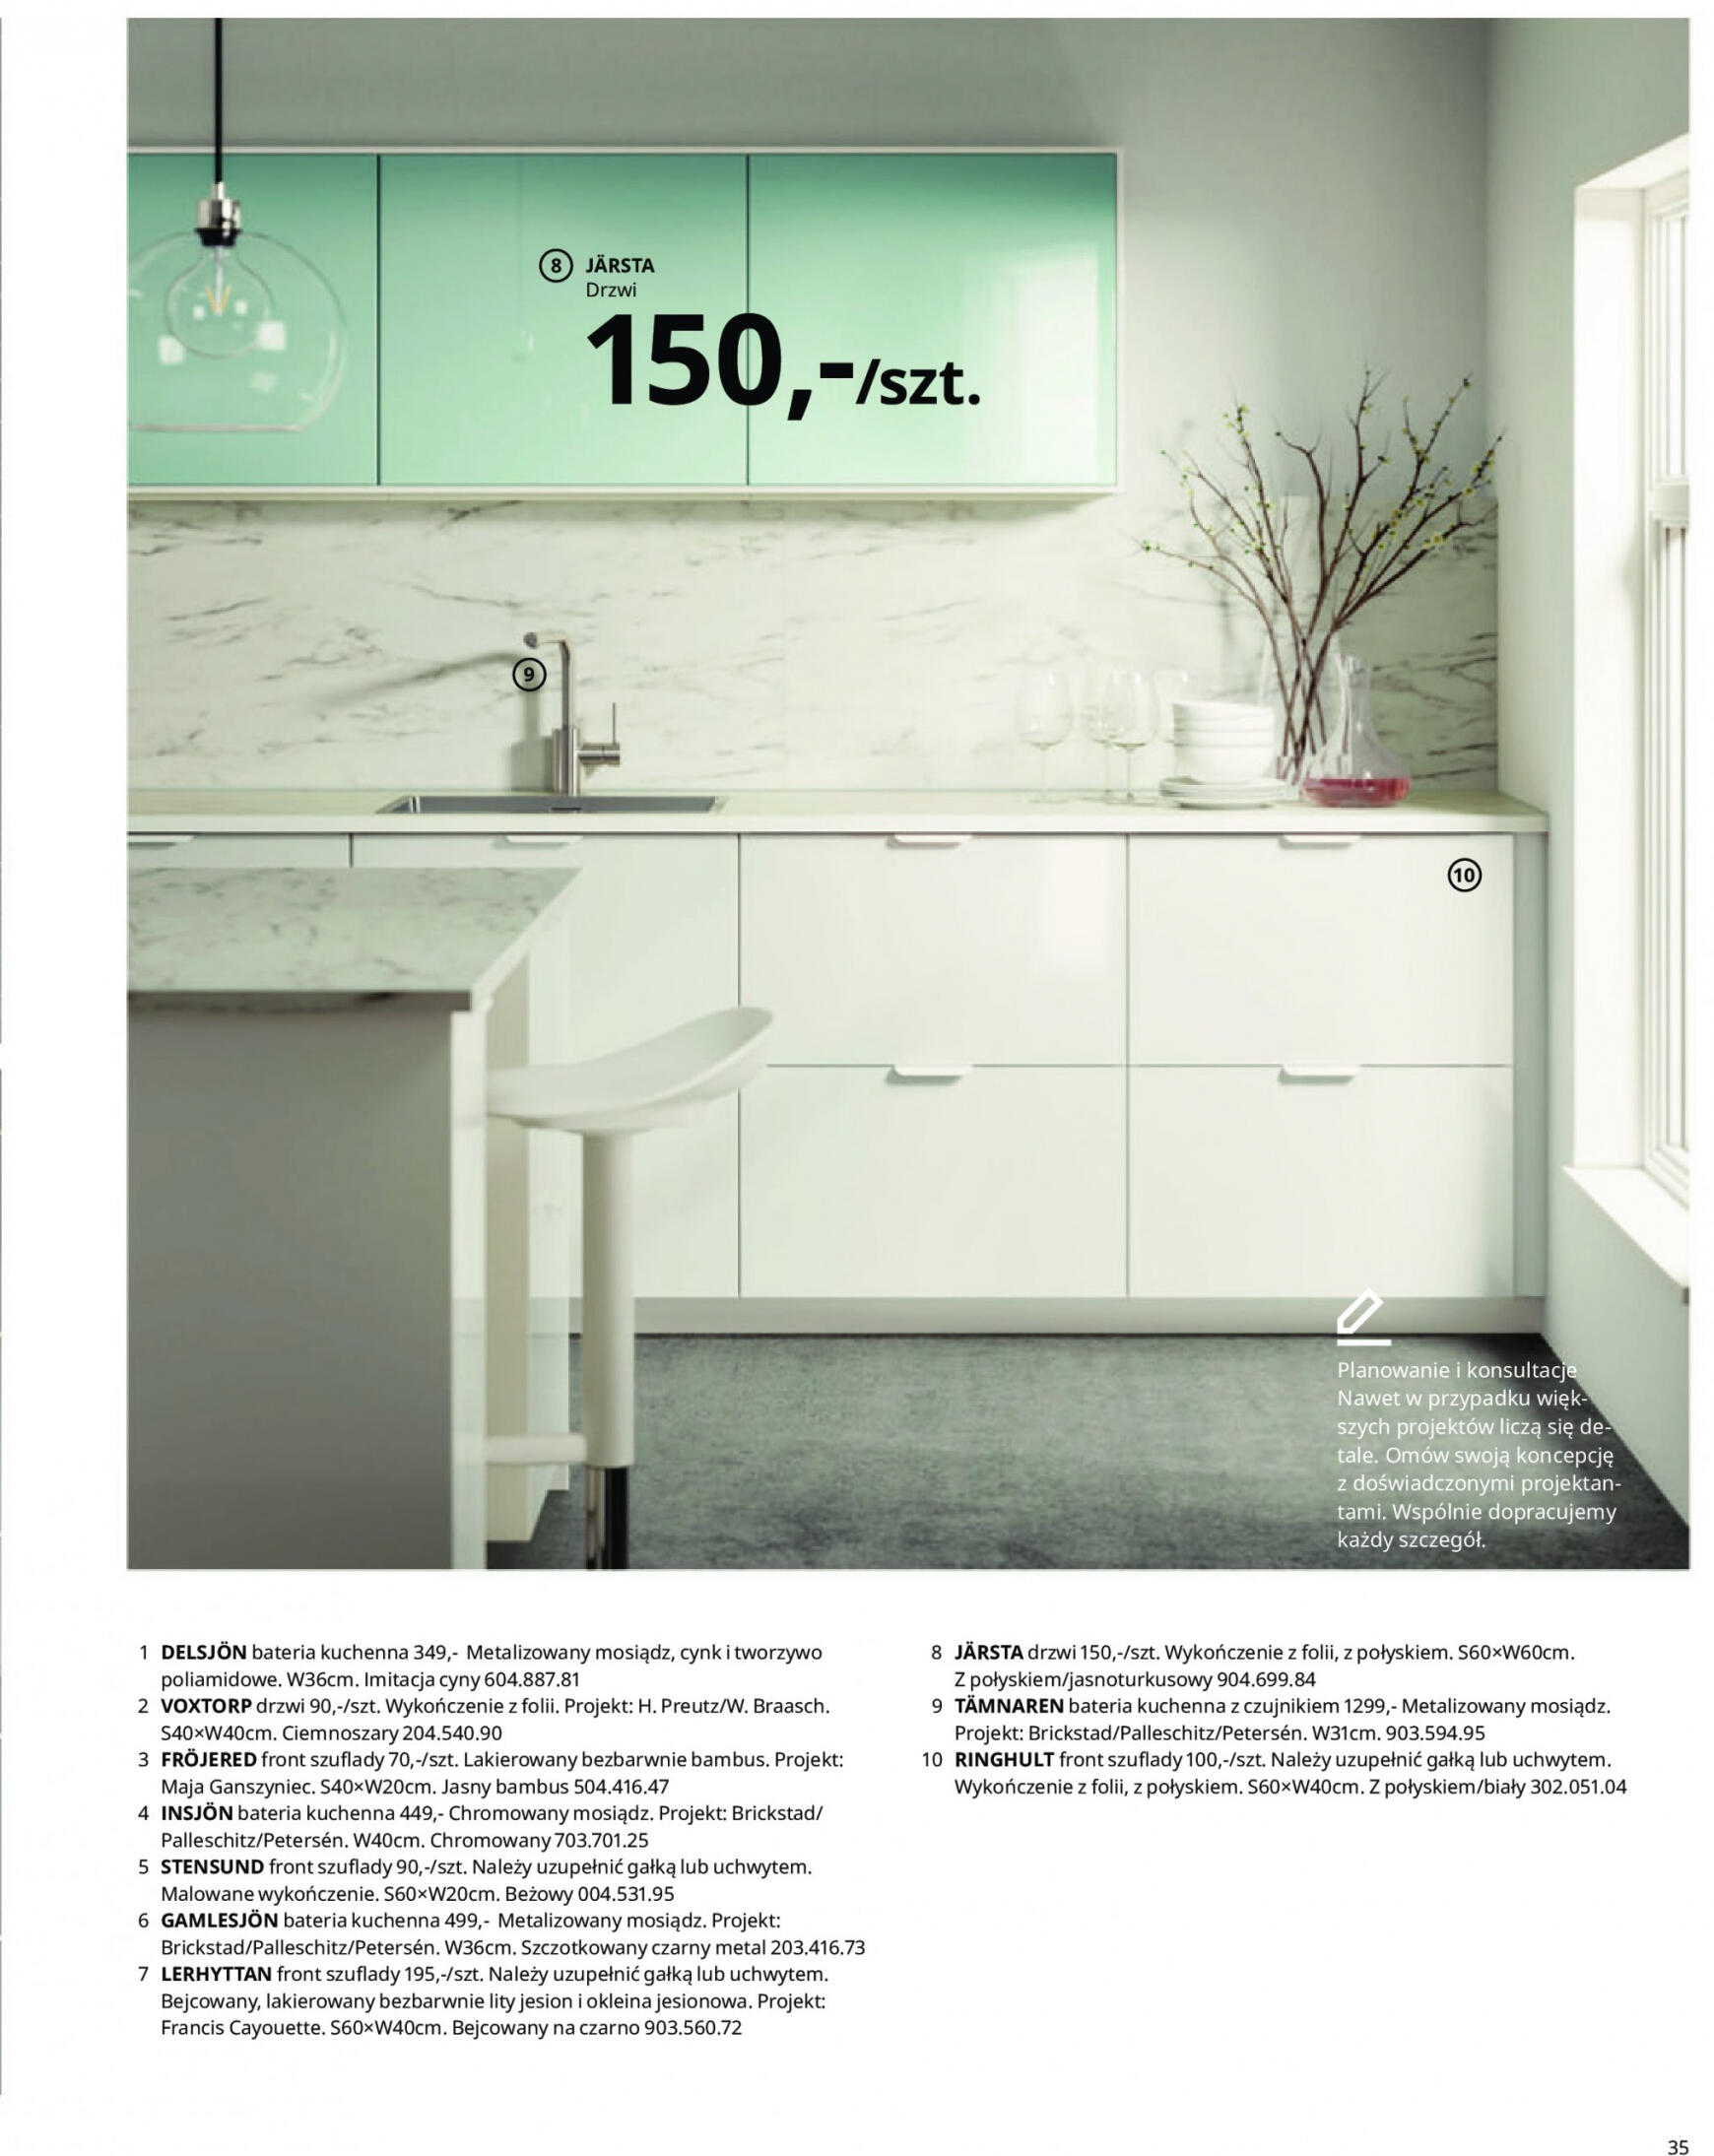 ikea - IKEA - Kuchnie - page: 35